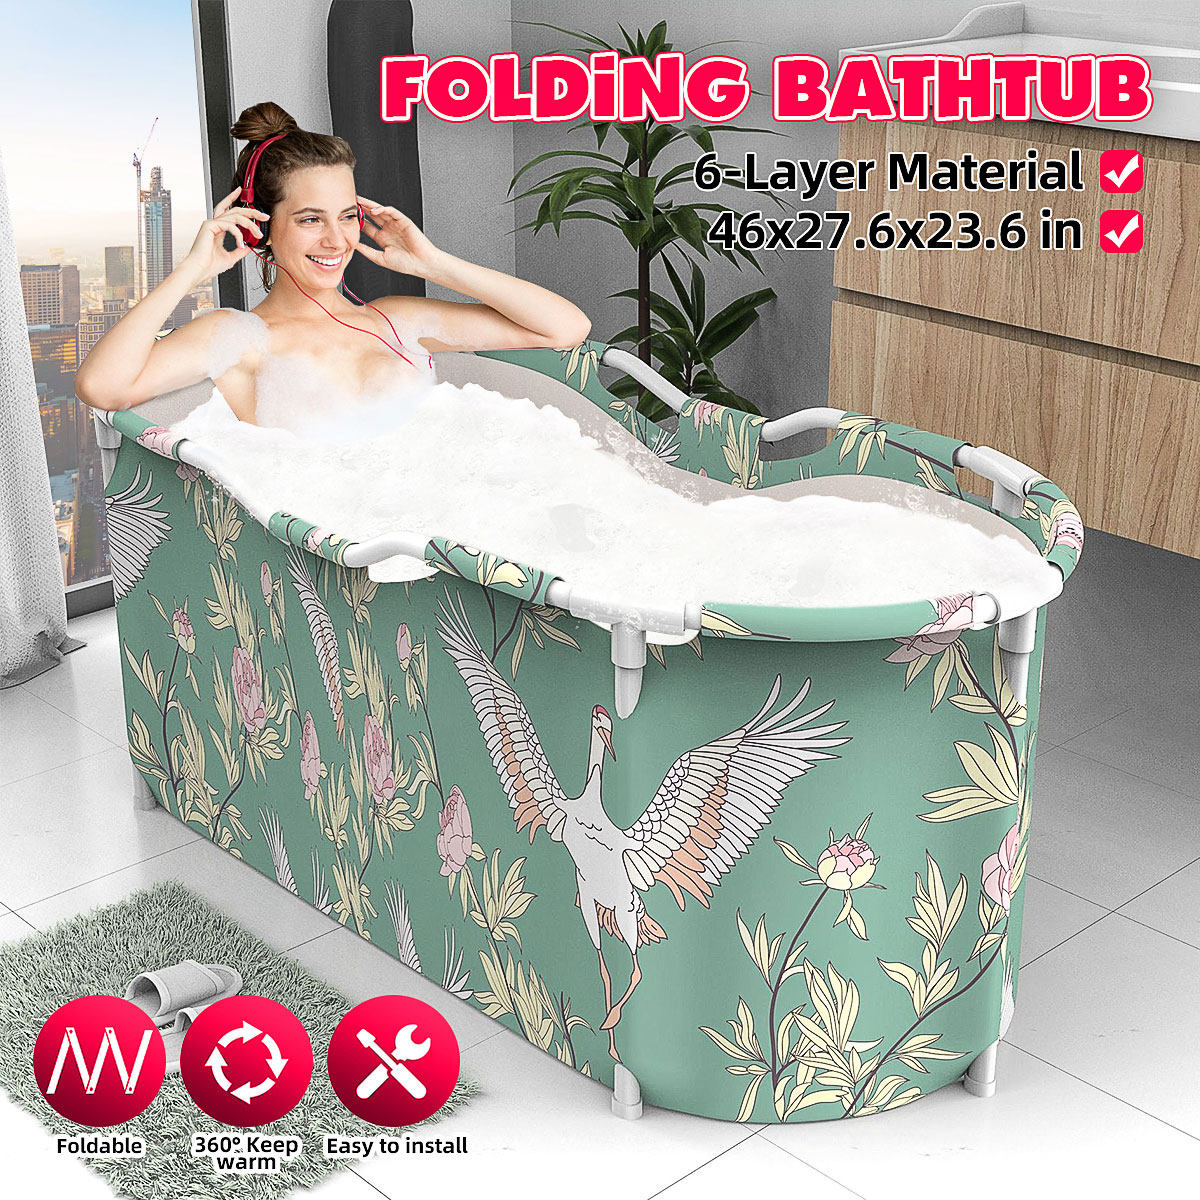 46x27.6x23.6 inch Portable Bathtub Folding Water Tub Indoor Outdoor Room Adult Spa Foldable Bath Bucket 16